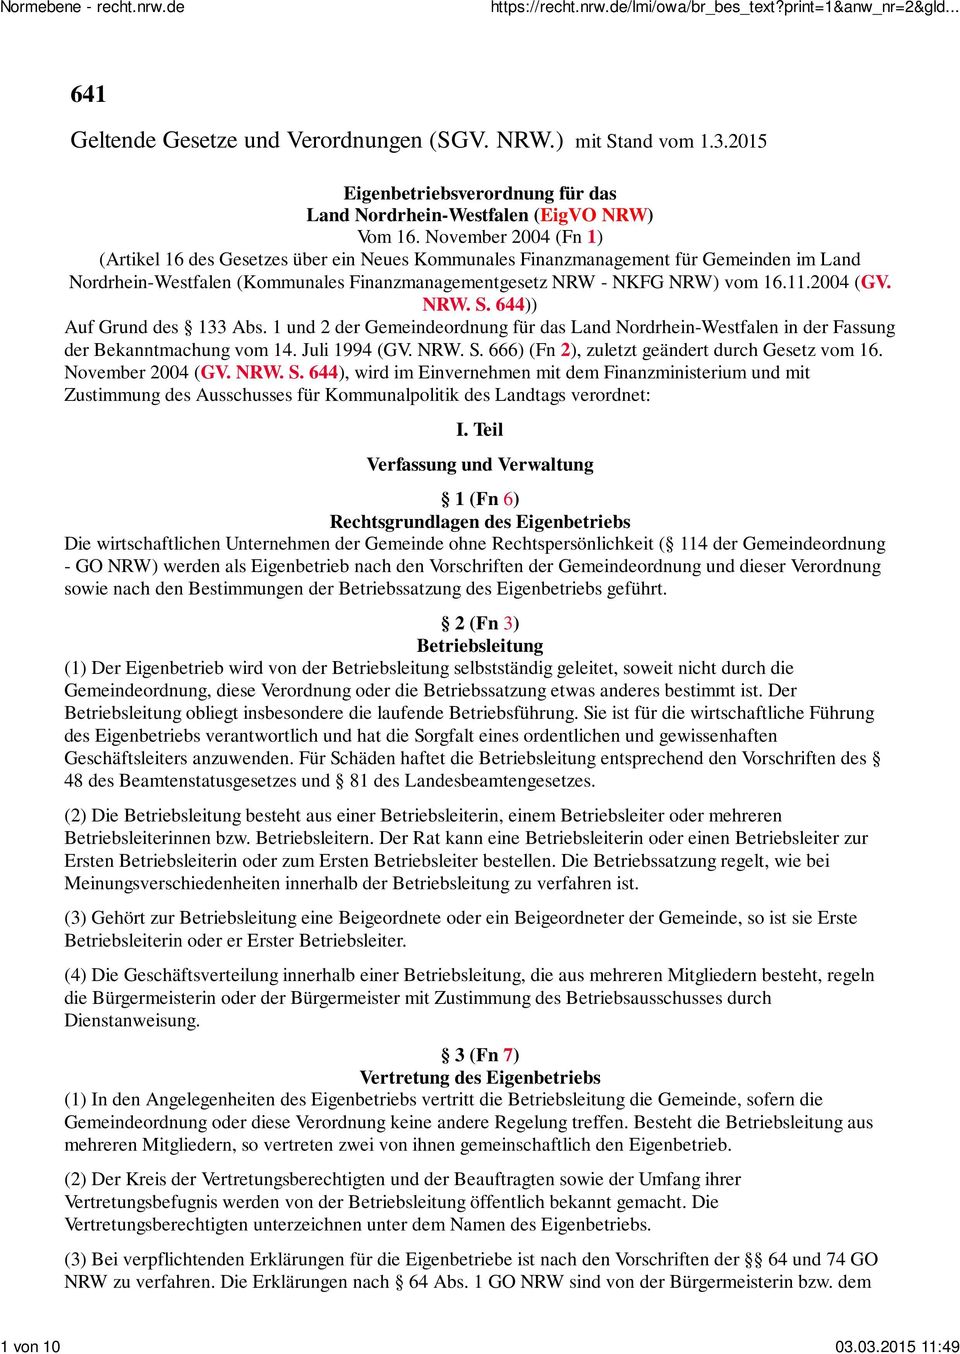 2004 (GV. NRW. S. 644)) Auf Grund des 133 Abs. 1 und 2 der Gemeindeordnung für das Land Nordrhein-Westfalen in der Fassung der Bekanntmachung vom 14. Juli 1994 (GV. NRW. S. 666) (Fn 2), zuletzt geändert durch Gesetz vom 16.